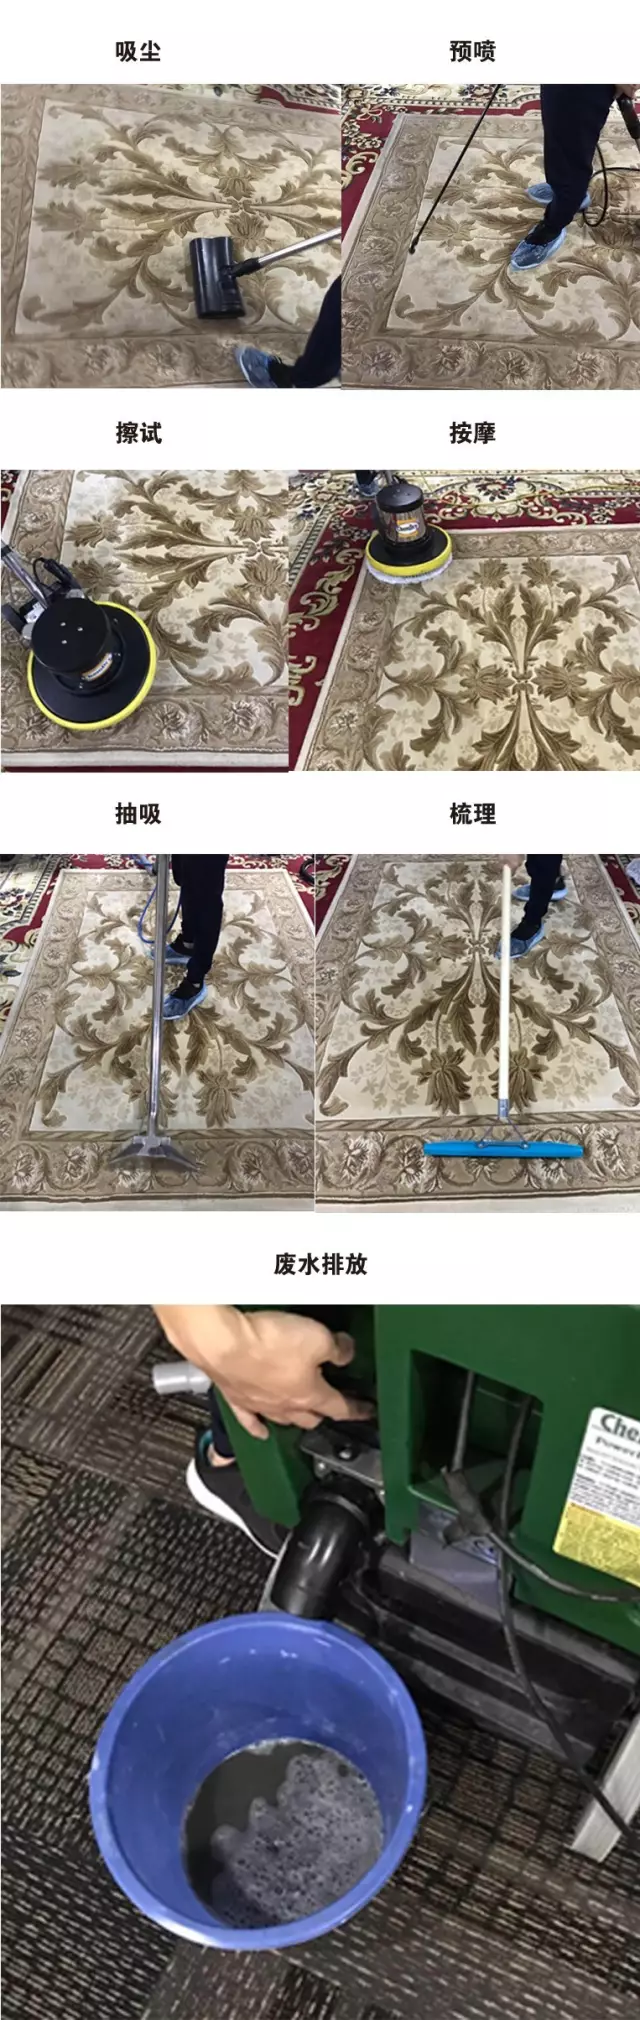 清洗一块地毯的全过程